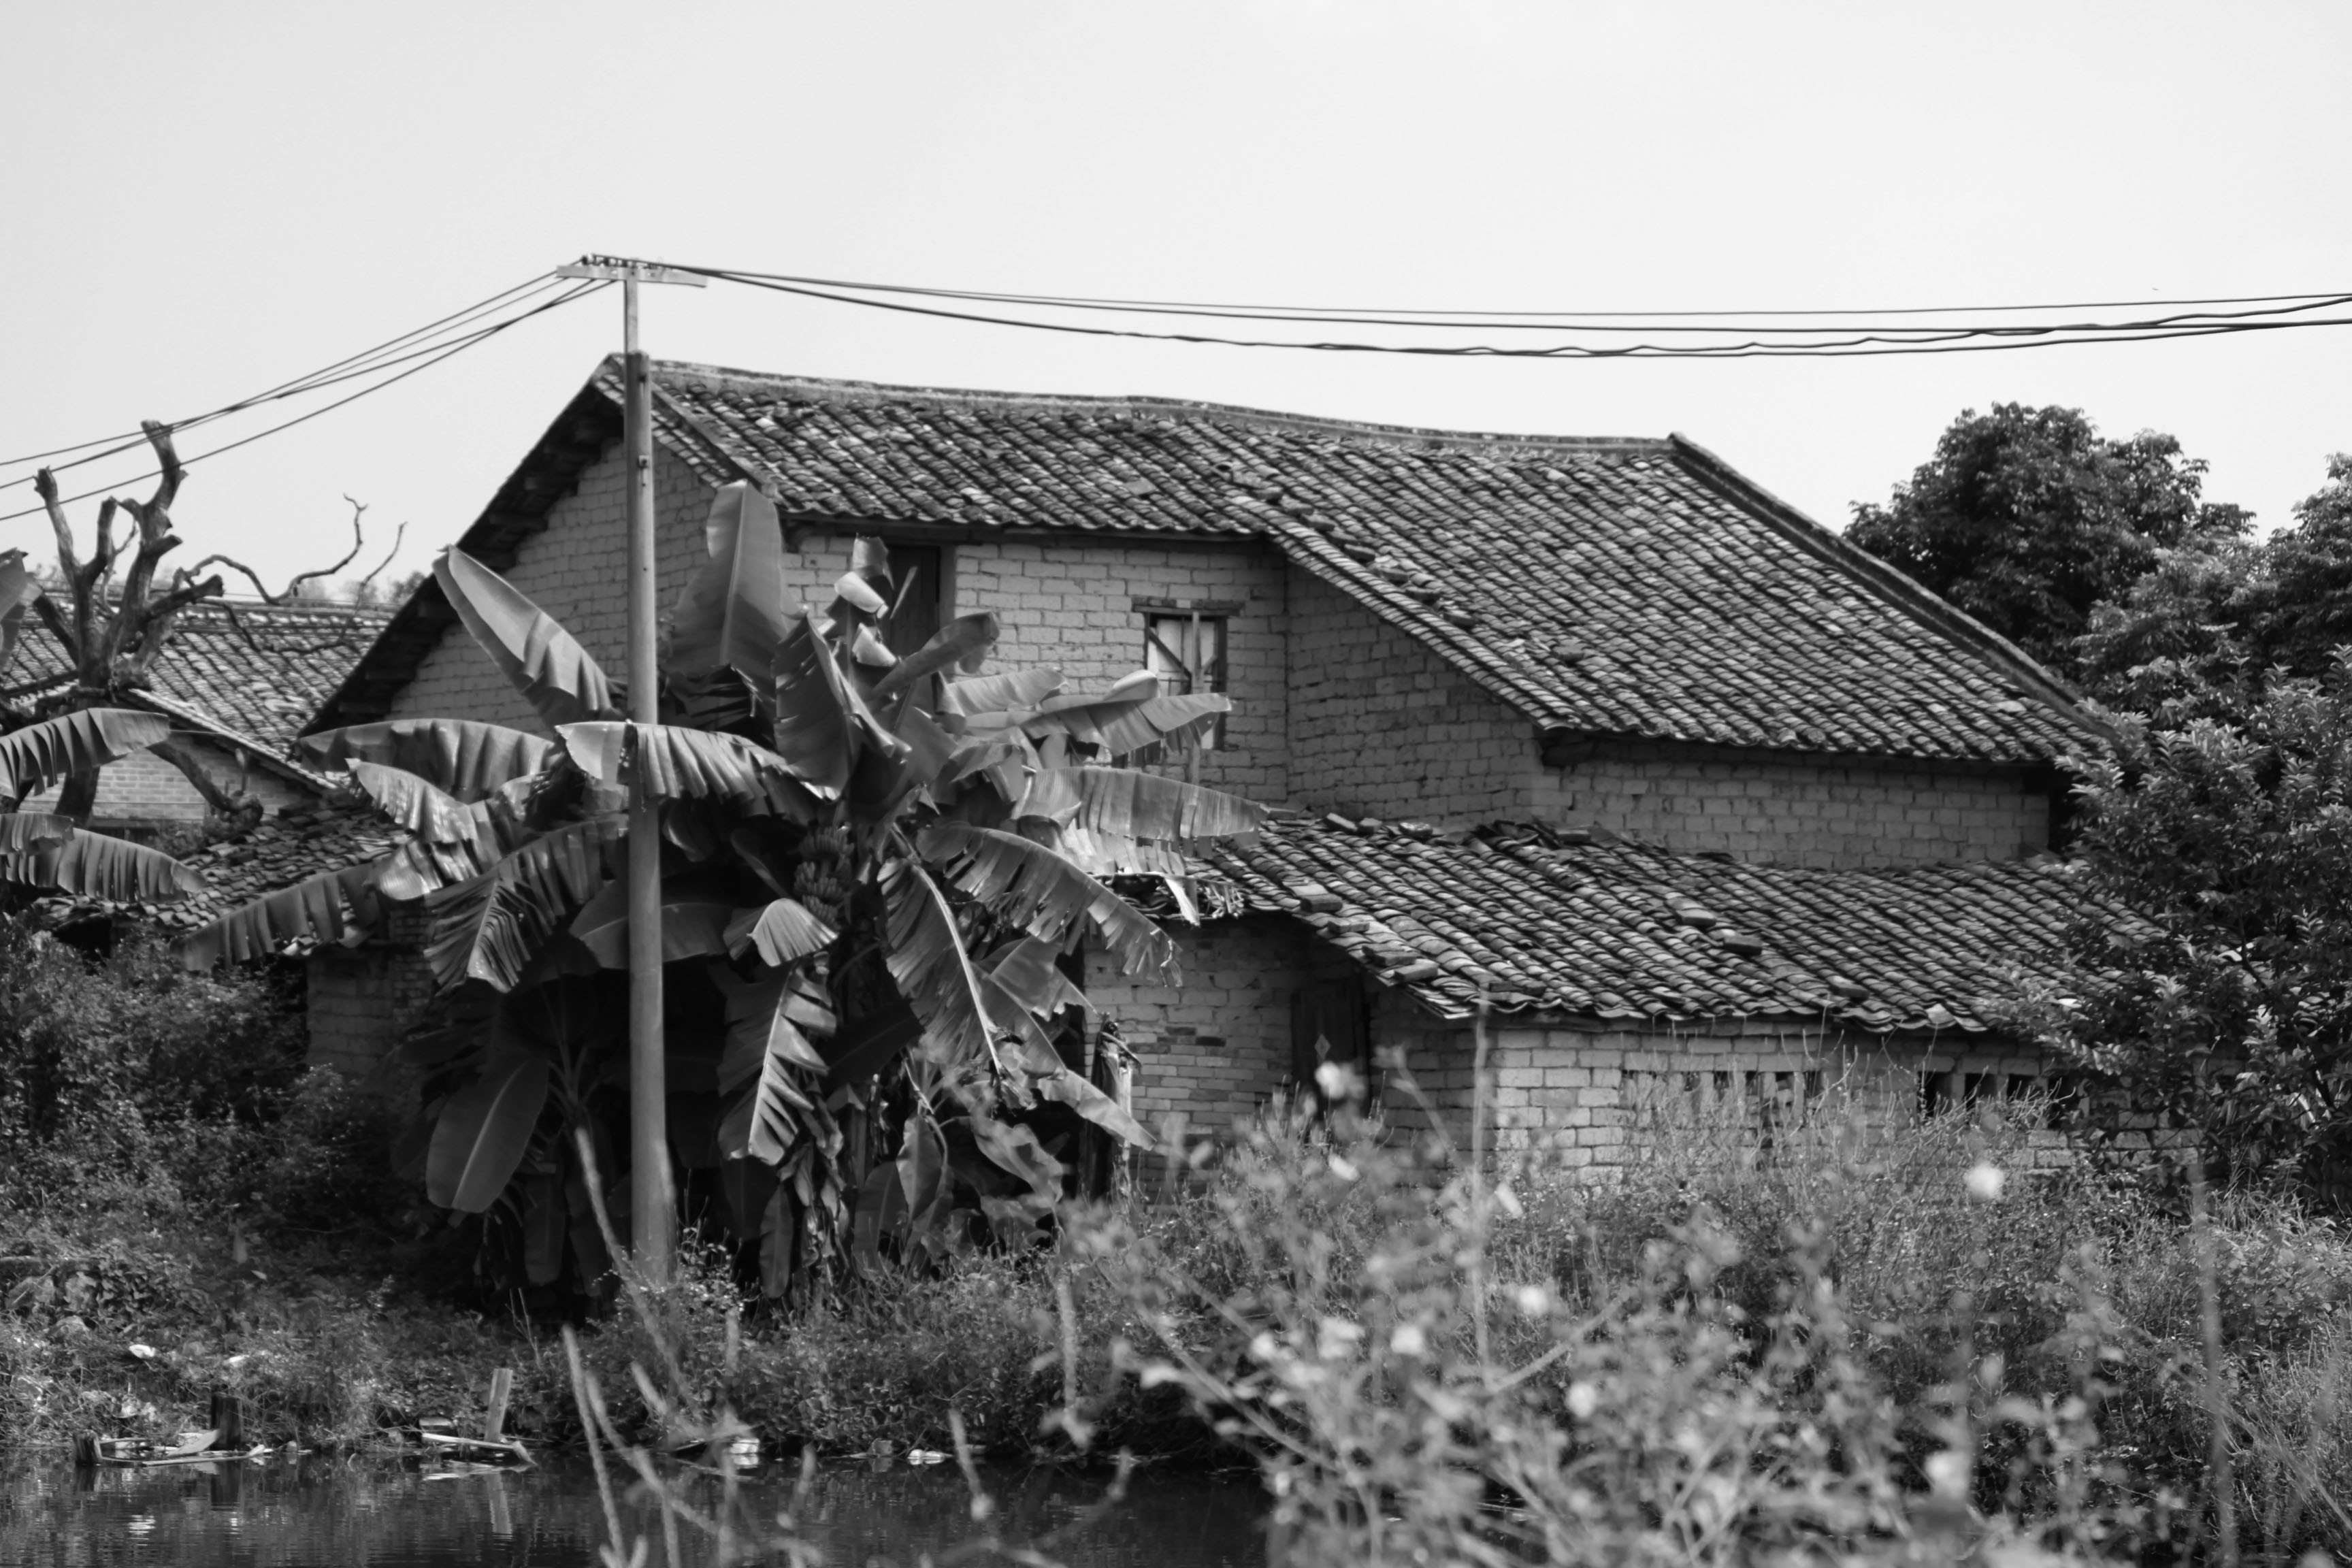 科学网—四川的老房子样式——穿斗房子 - 段含明的博文